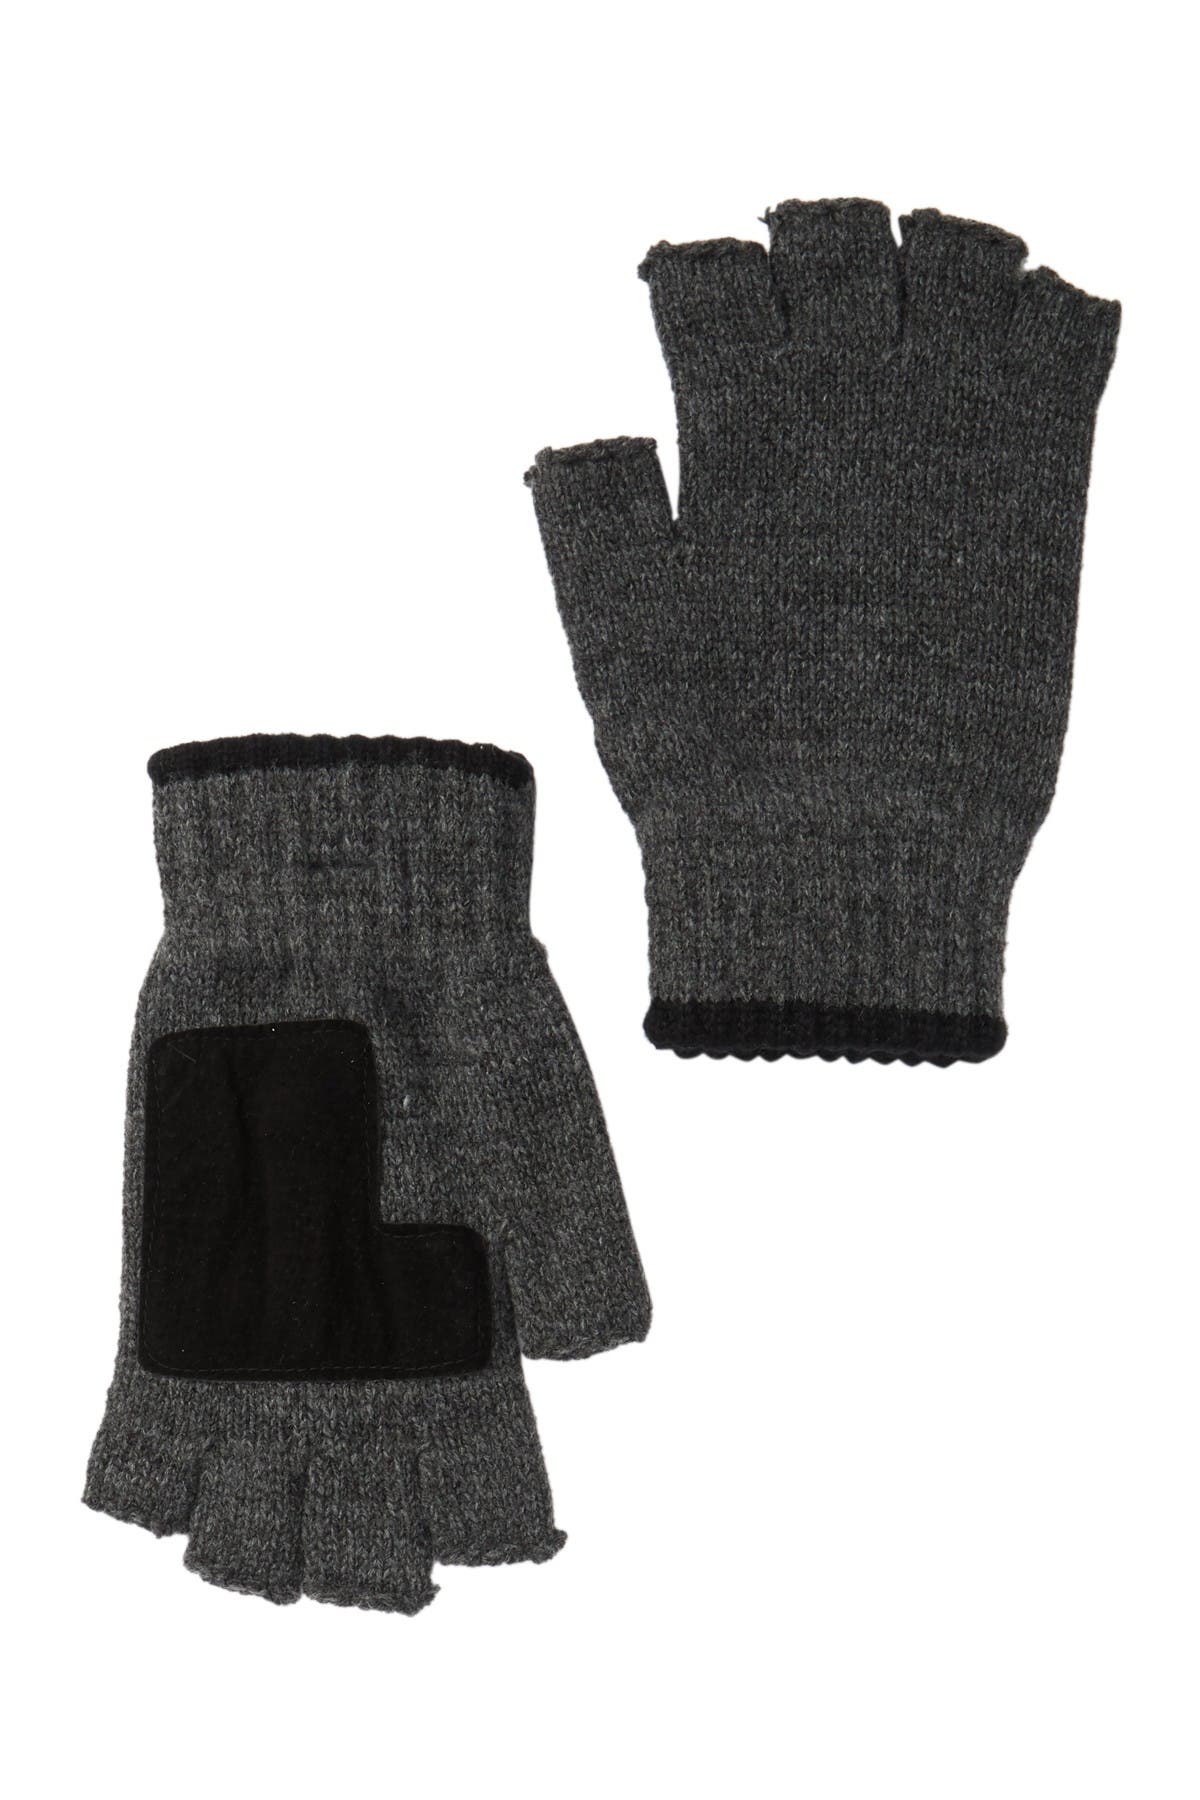 Marled Fingerless Gloves | Nordstrom Rack